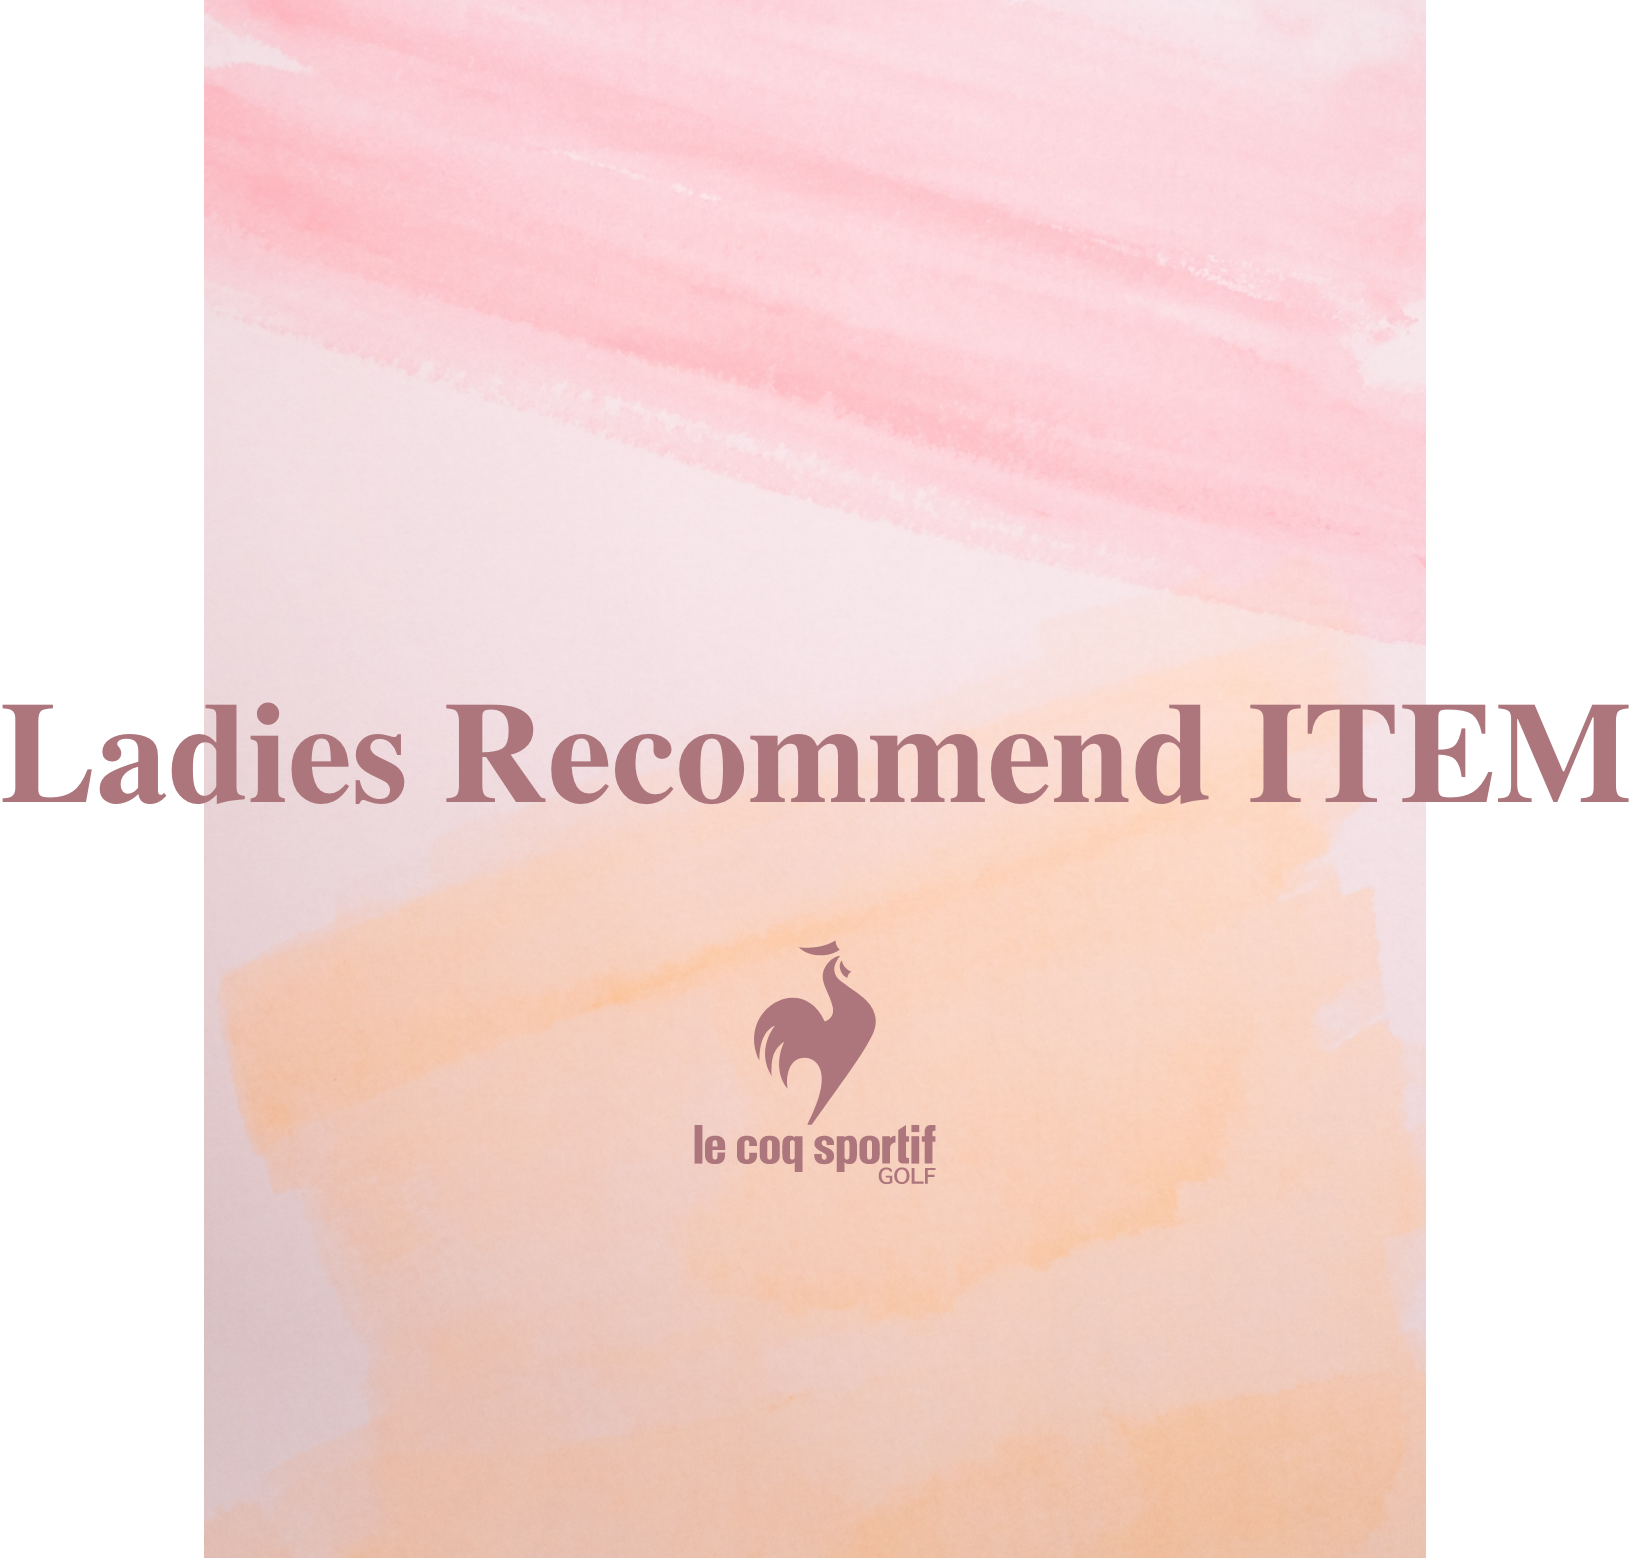 Ladies Recommend ITEM